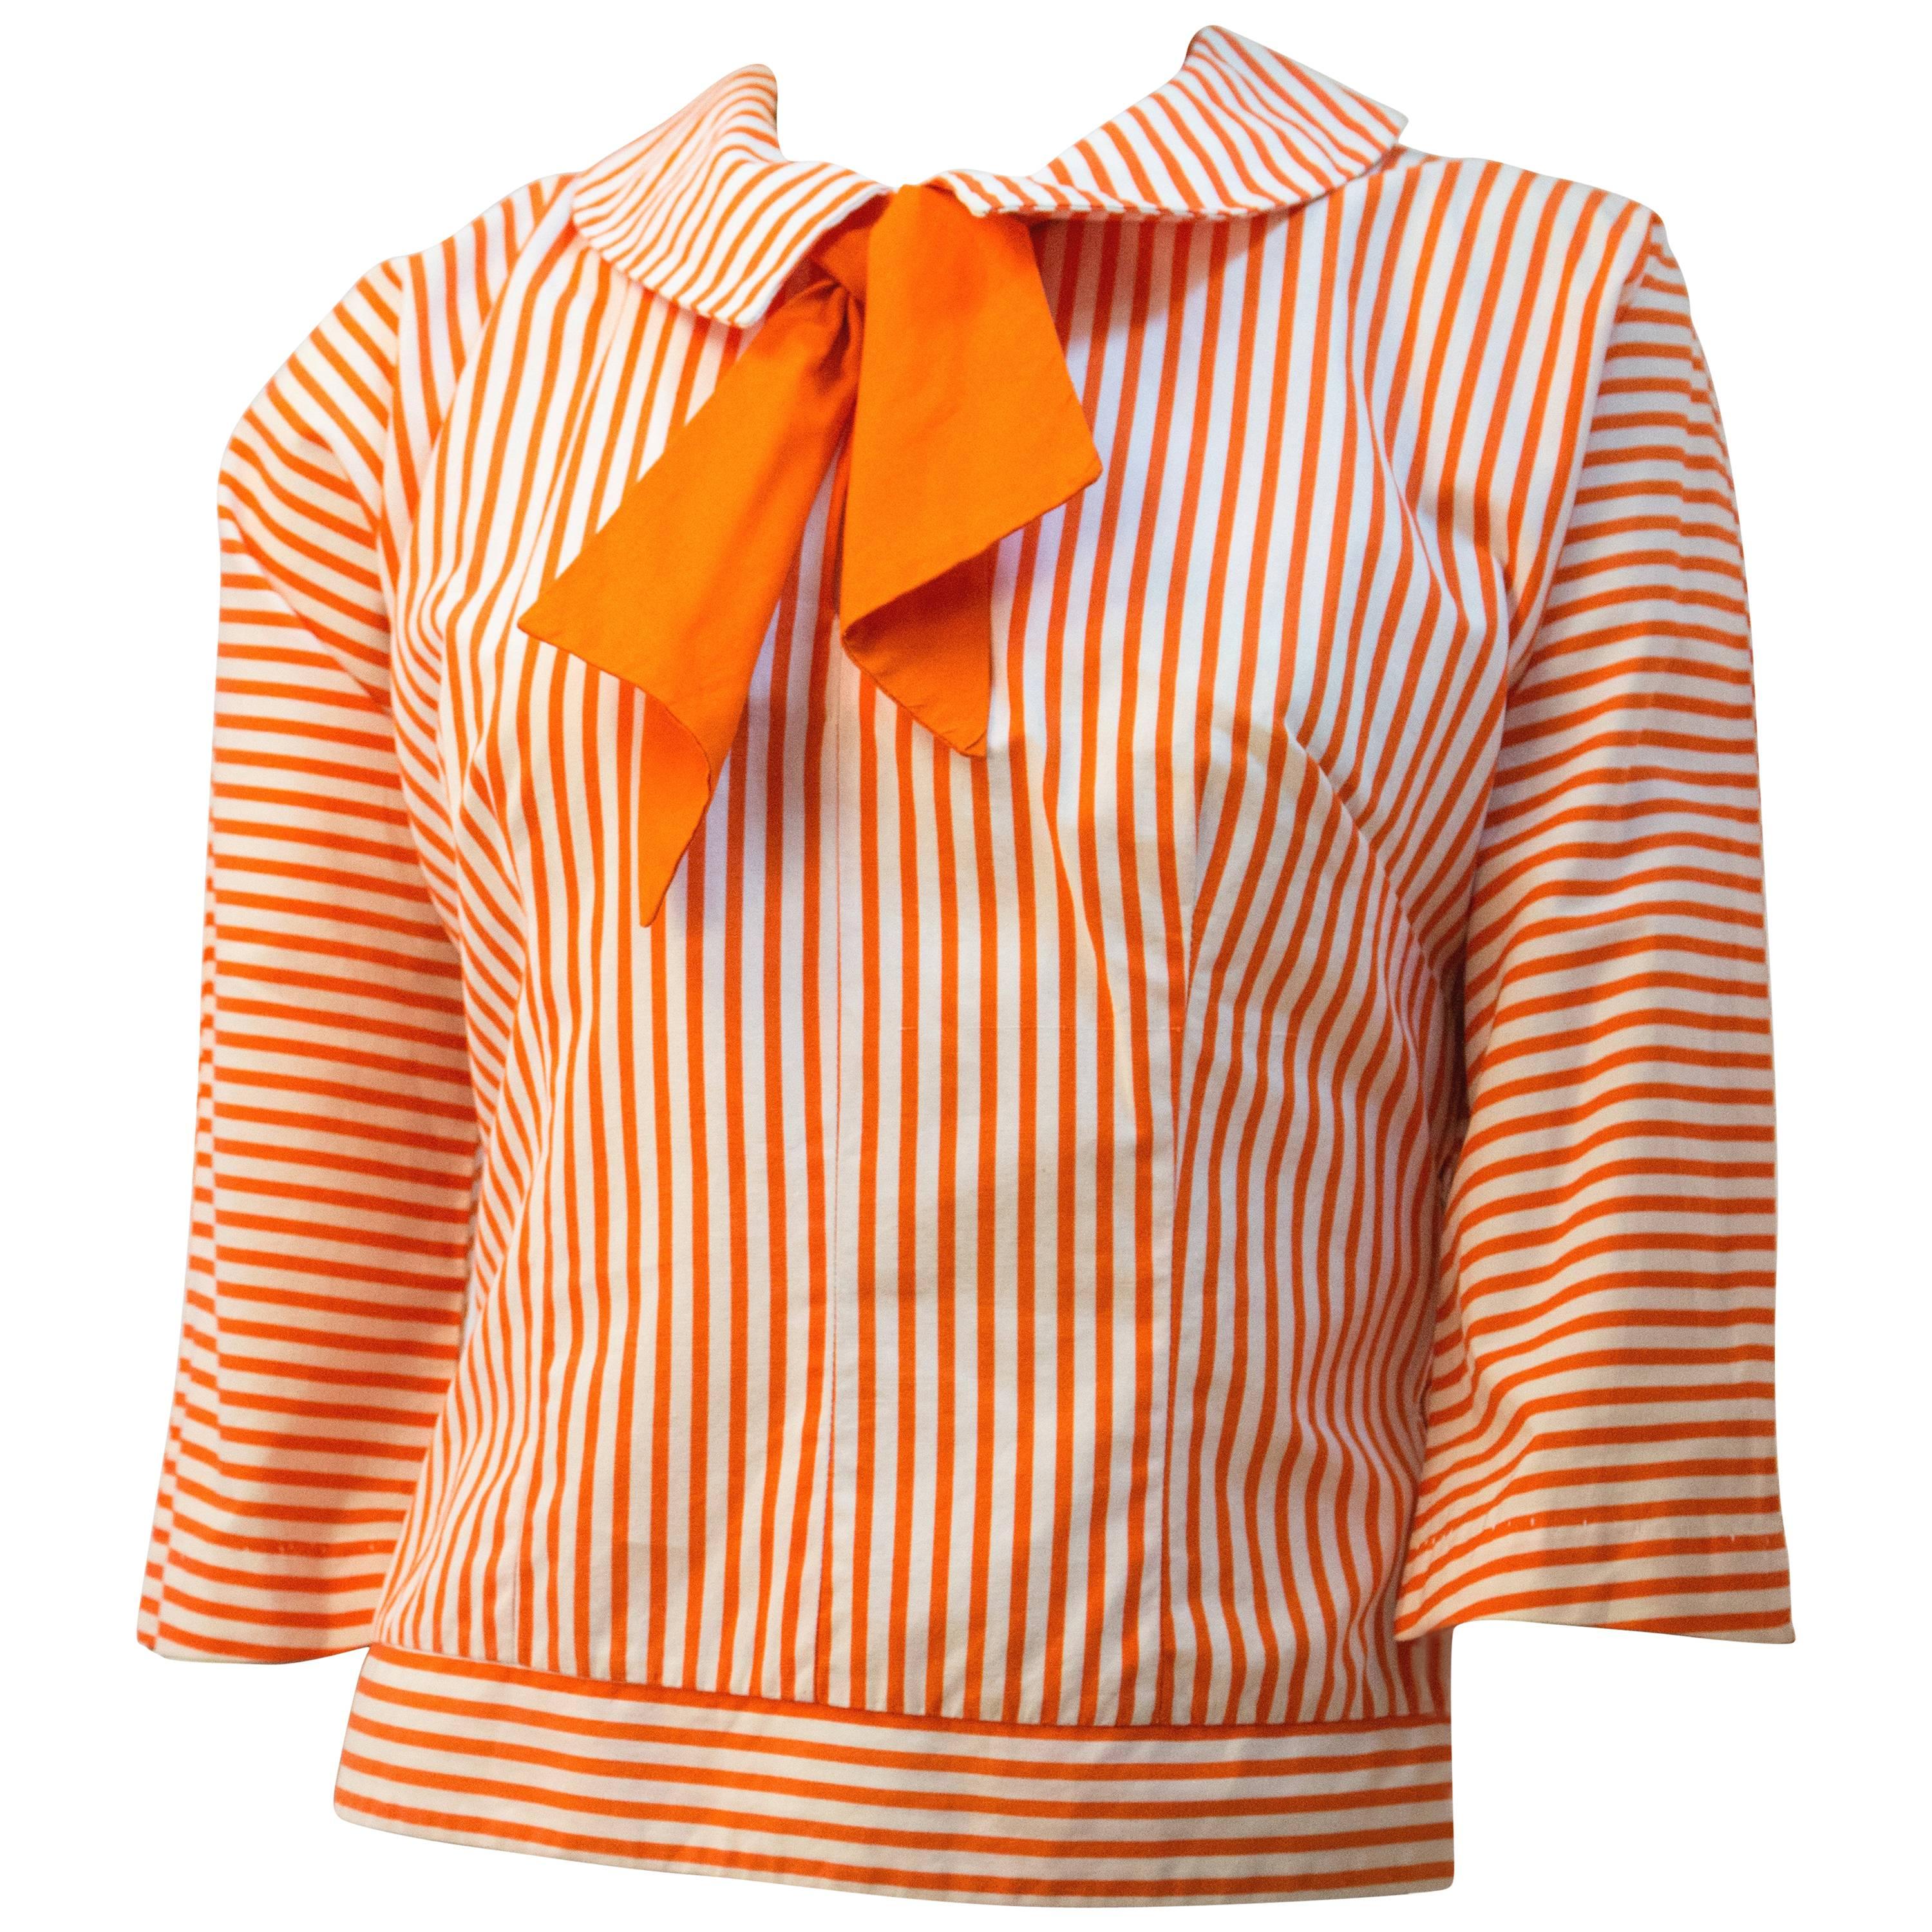 60s Orange and White Striped Sailor Top.